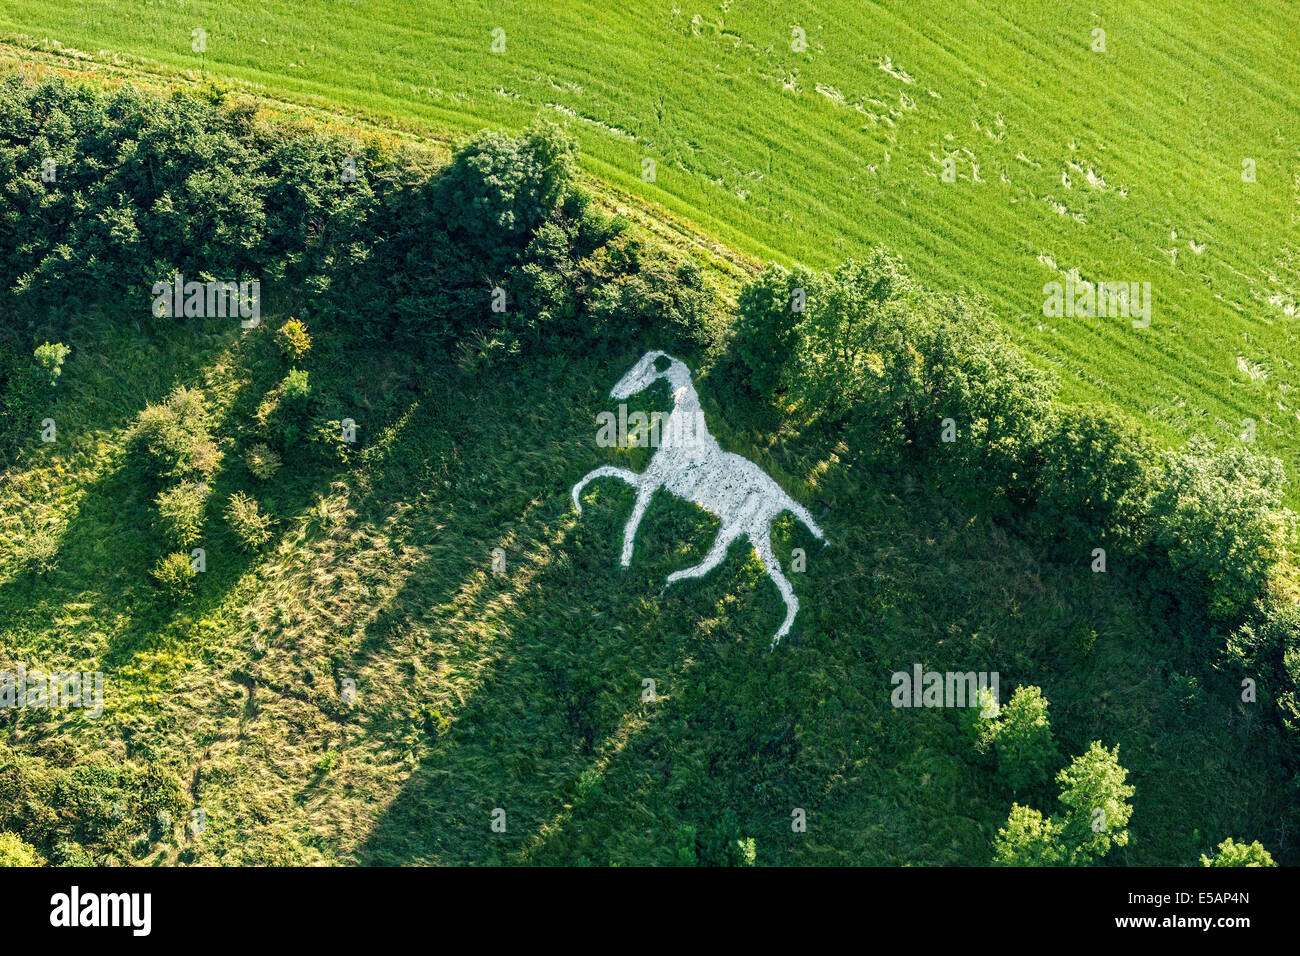 Vista aerea del Cavallo Bianco in grandi città o ampia Hinton, nr Royal Wootton Bassett, a sud di Swindon, Wiltshire, Regno Unito. JMH6173 Foto Stock